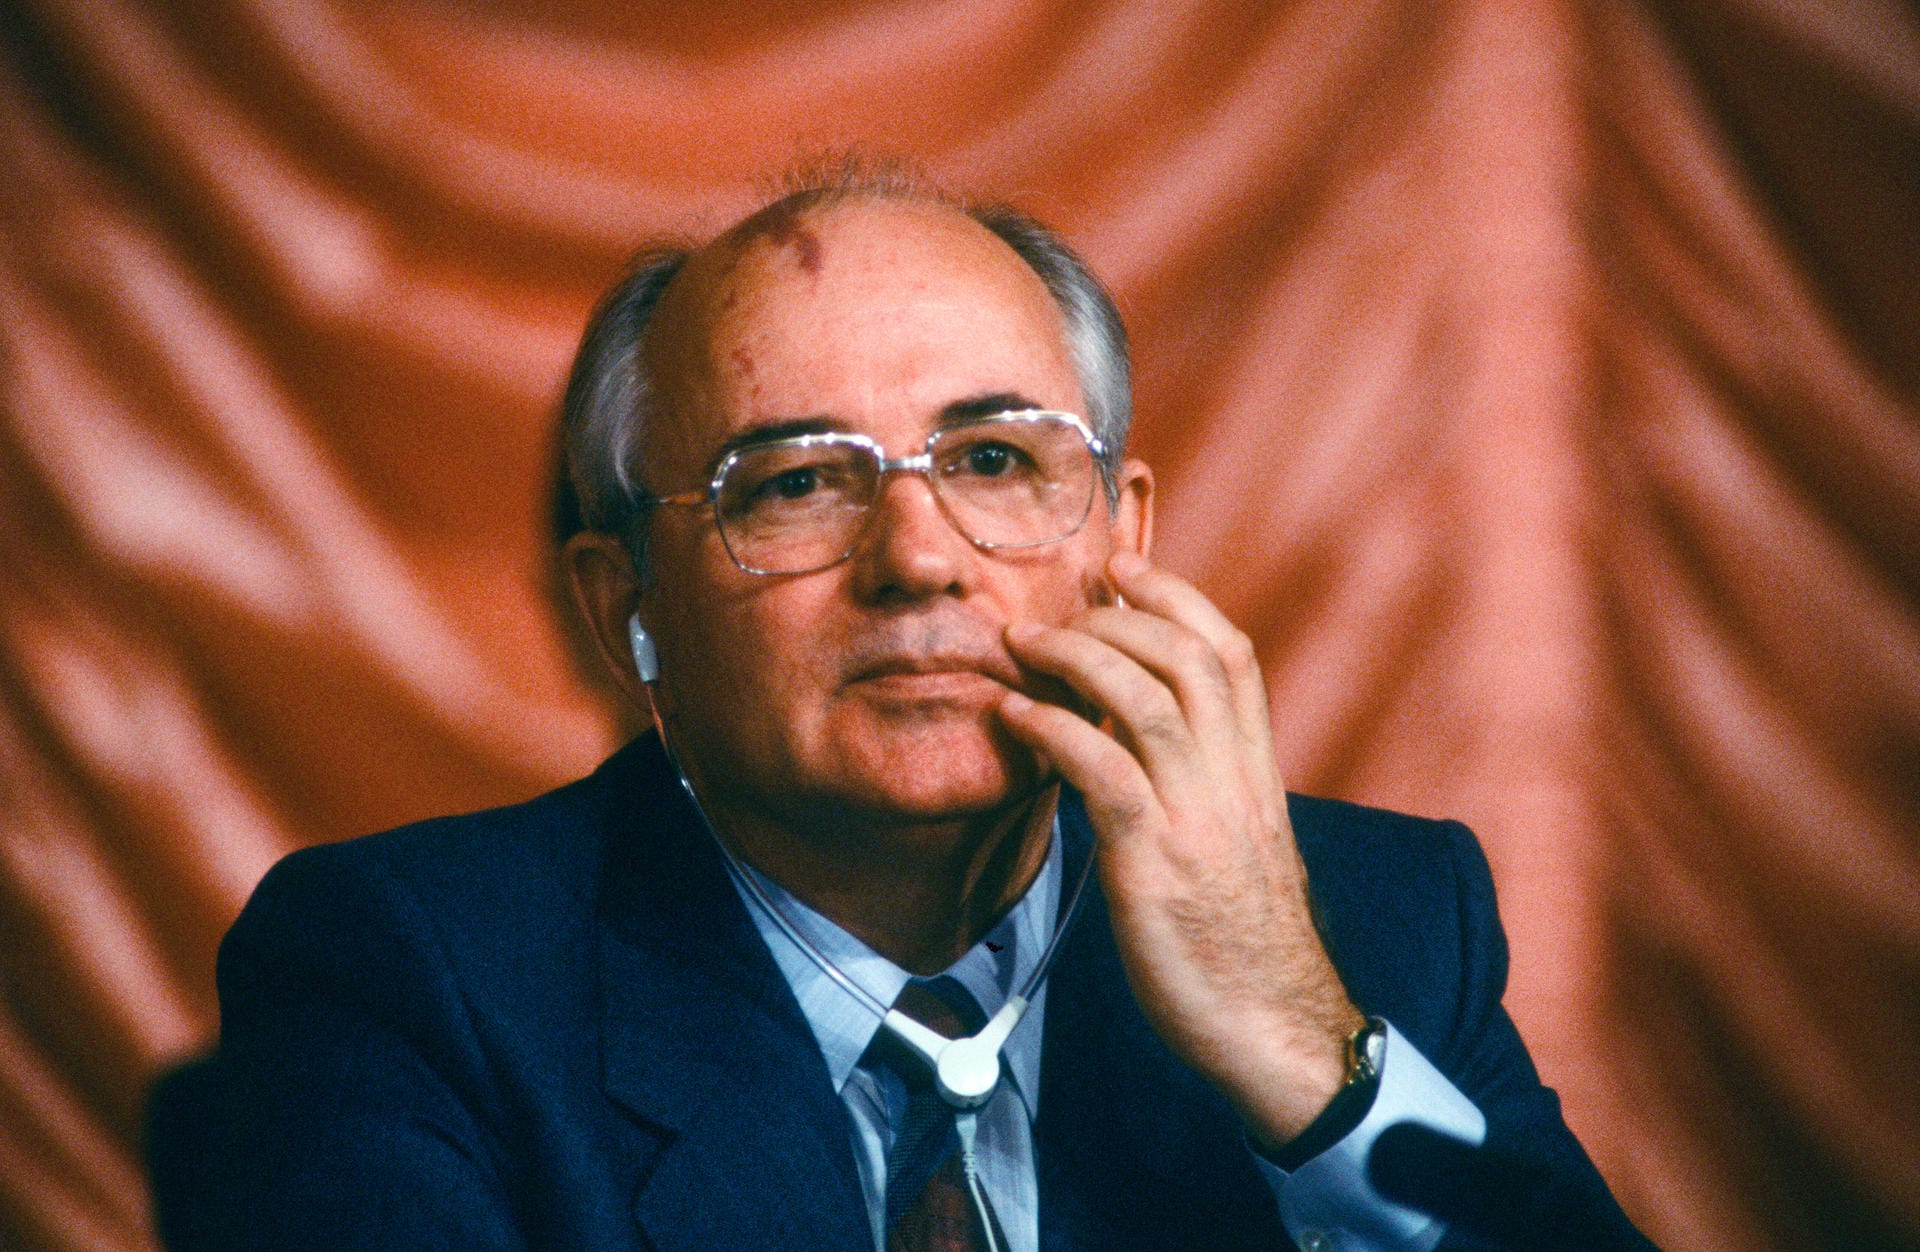 Michail Gorbatschow: Im Jahr 1990, ein Jahr nach dem Mauerfall und dem Ende des Kalten Krieges, wurde Gorbatschow geehrt. Er war das damalige sowjetische Staatsoberhaupt.